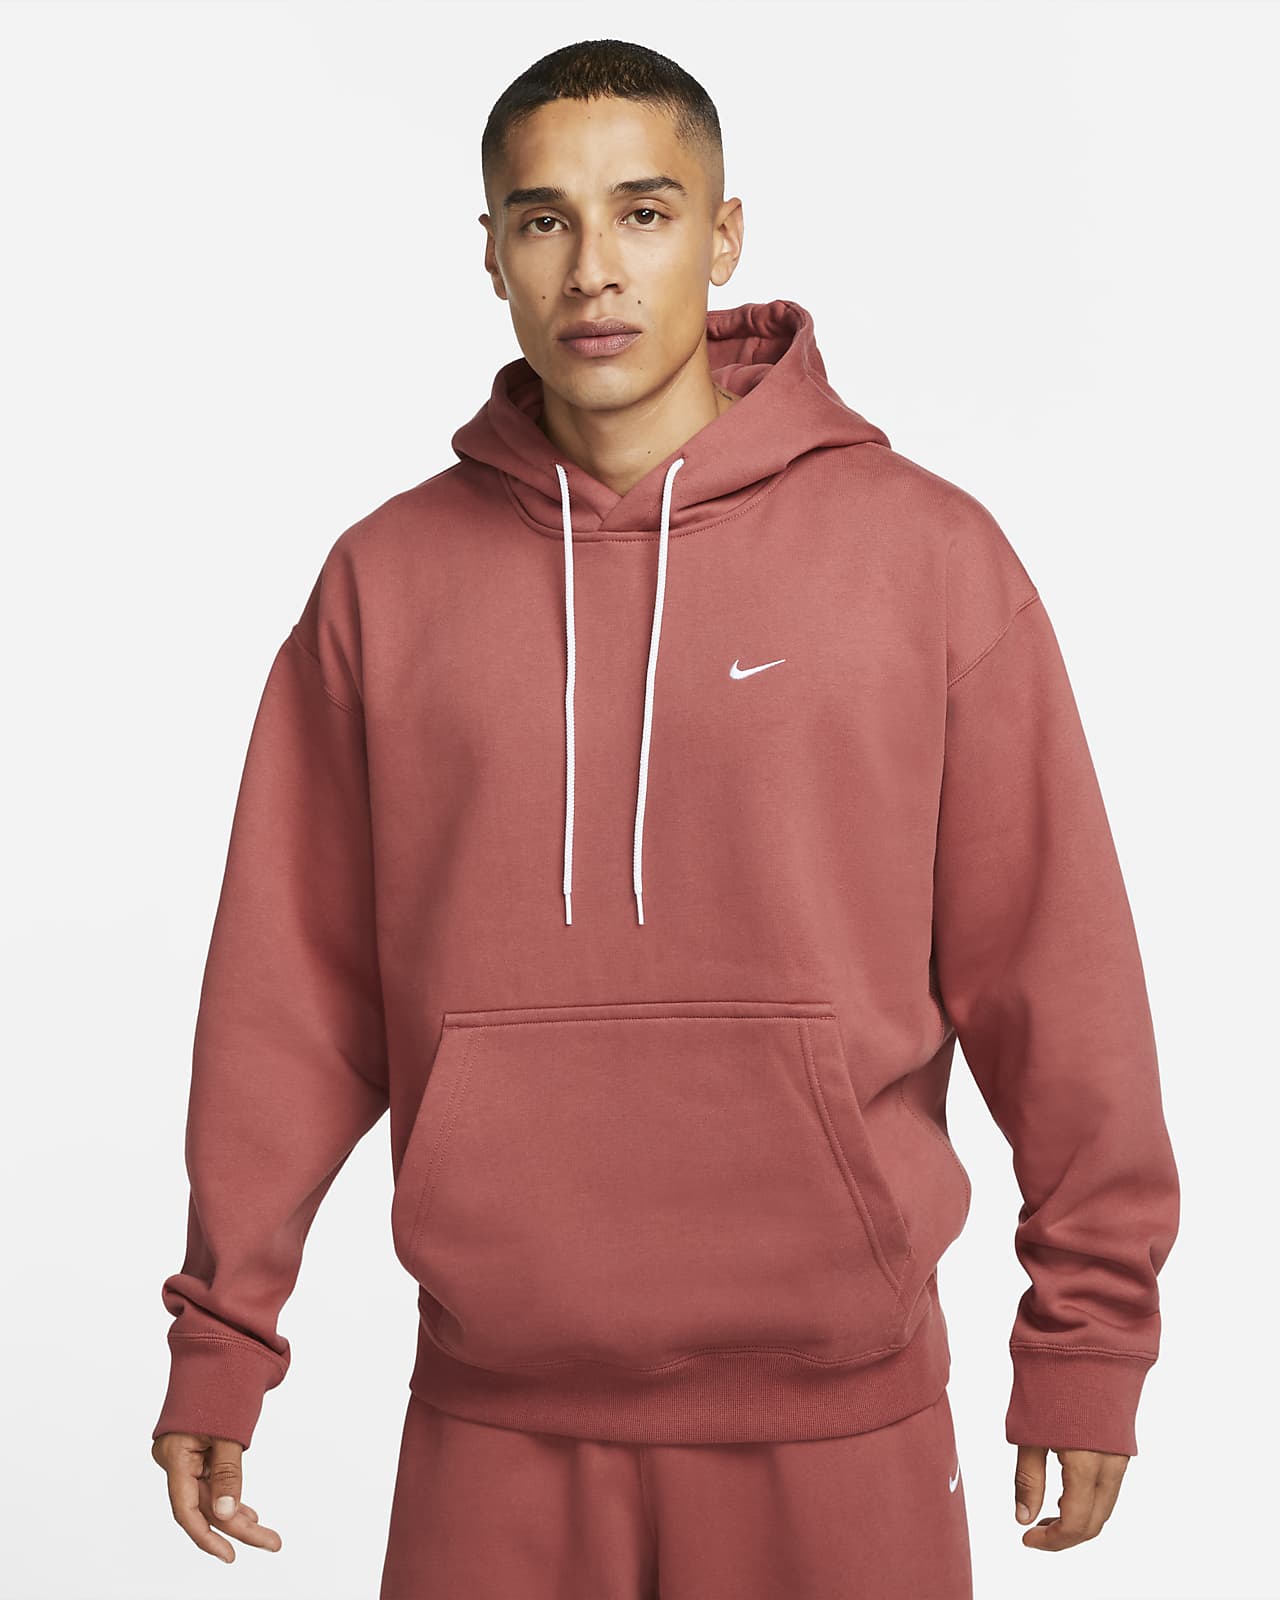 Solo Swoosh Fleece Nike UK